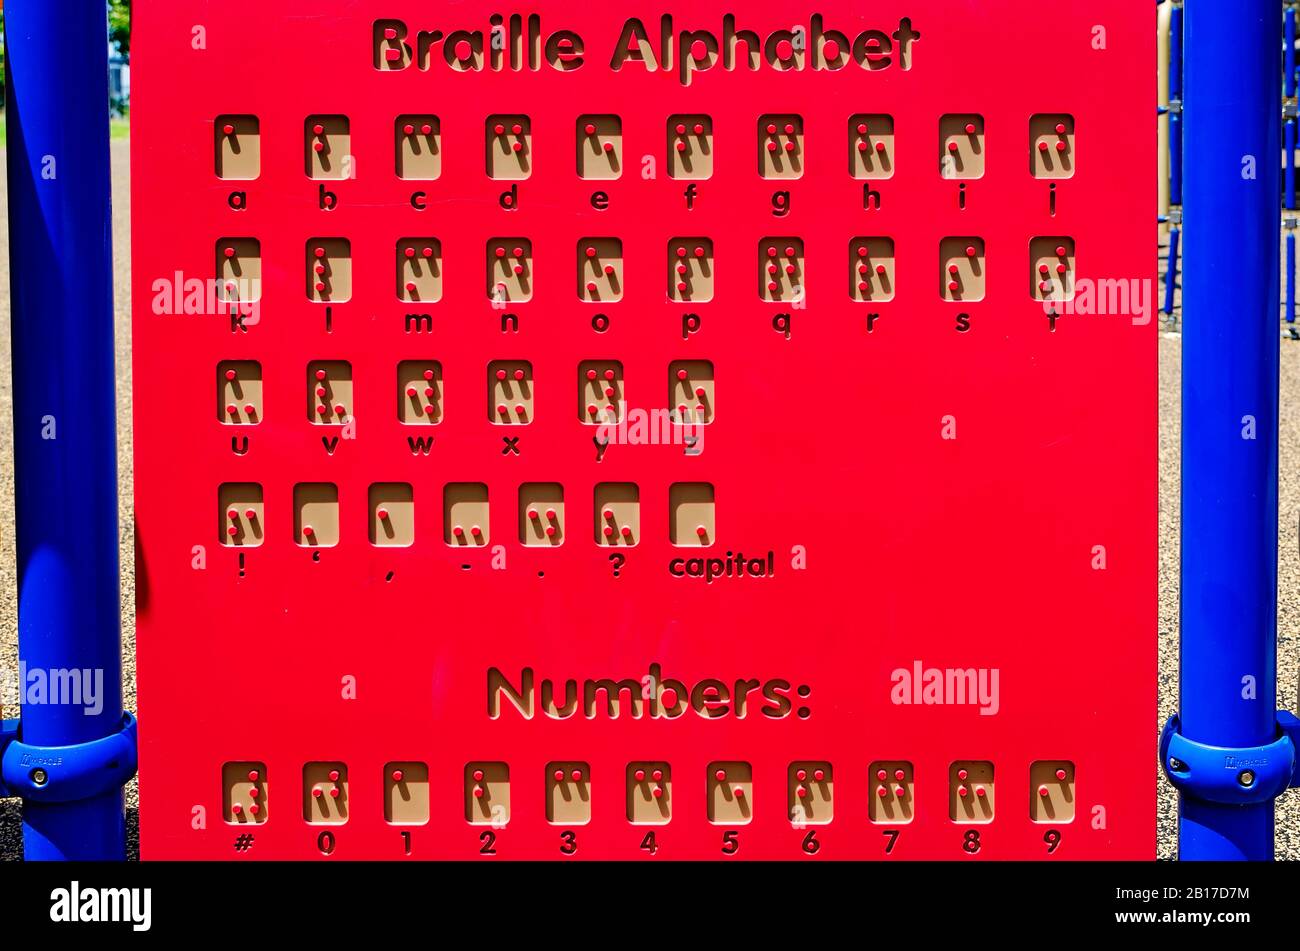 Il simbolo dell'alfabeto Braille viene visualizzato su un parco giochi accessibile e inclusivo, il 26 luglio 2019, a Vicksburg, Mississippi. Foto Stock